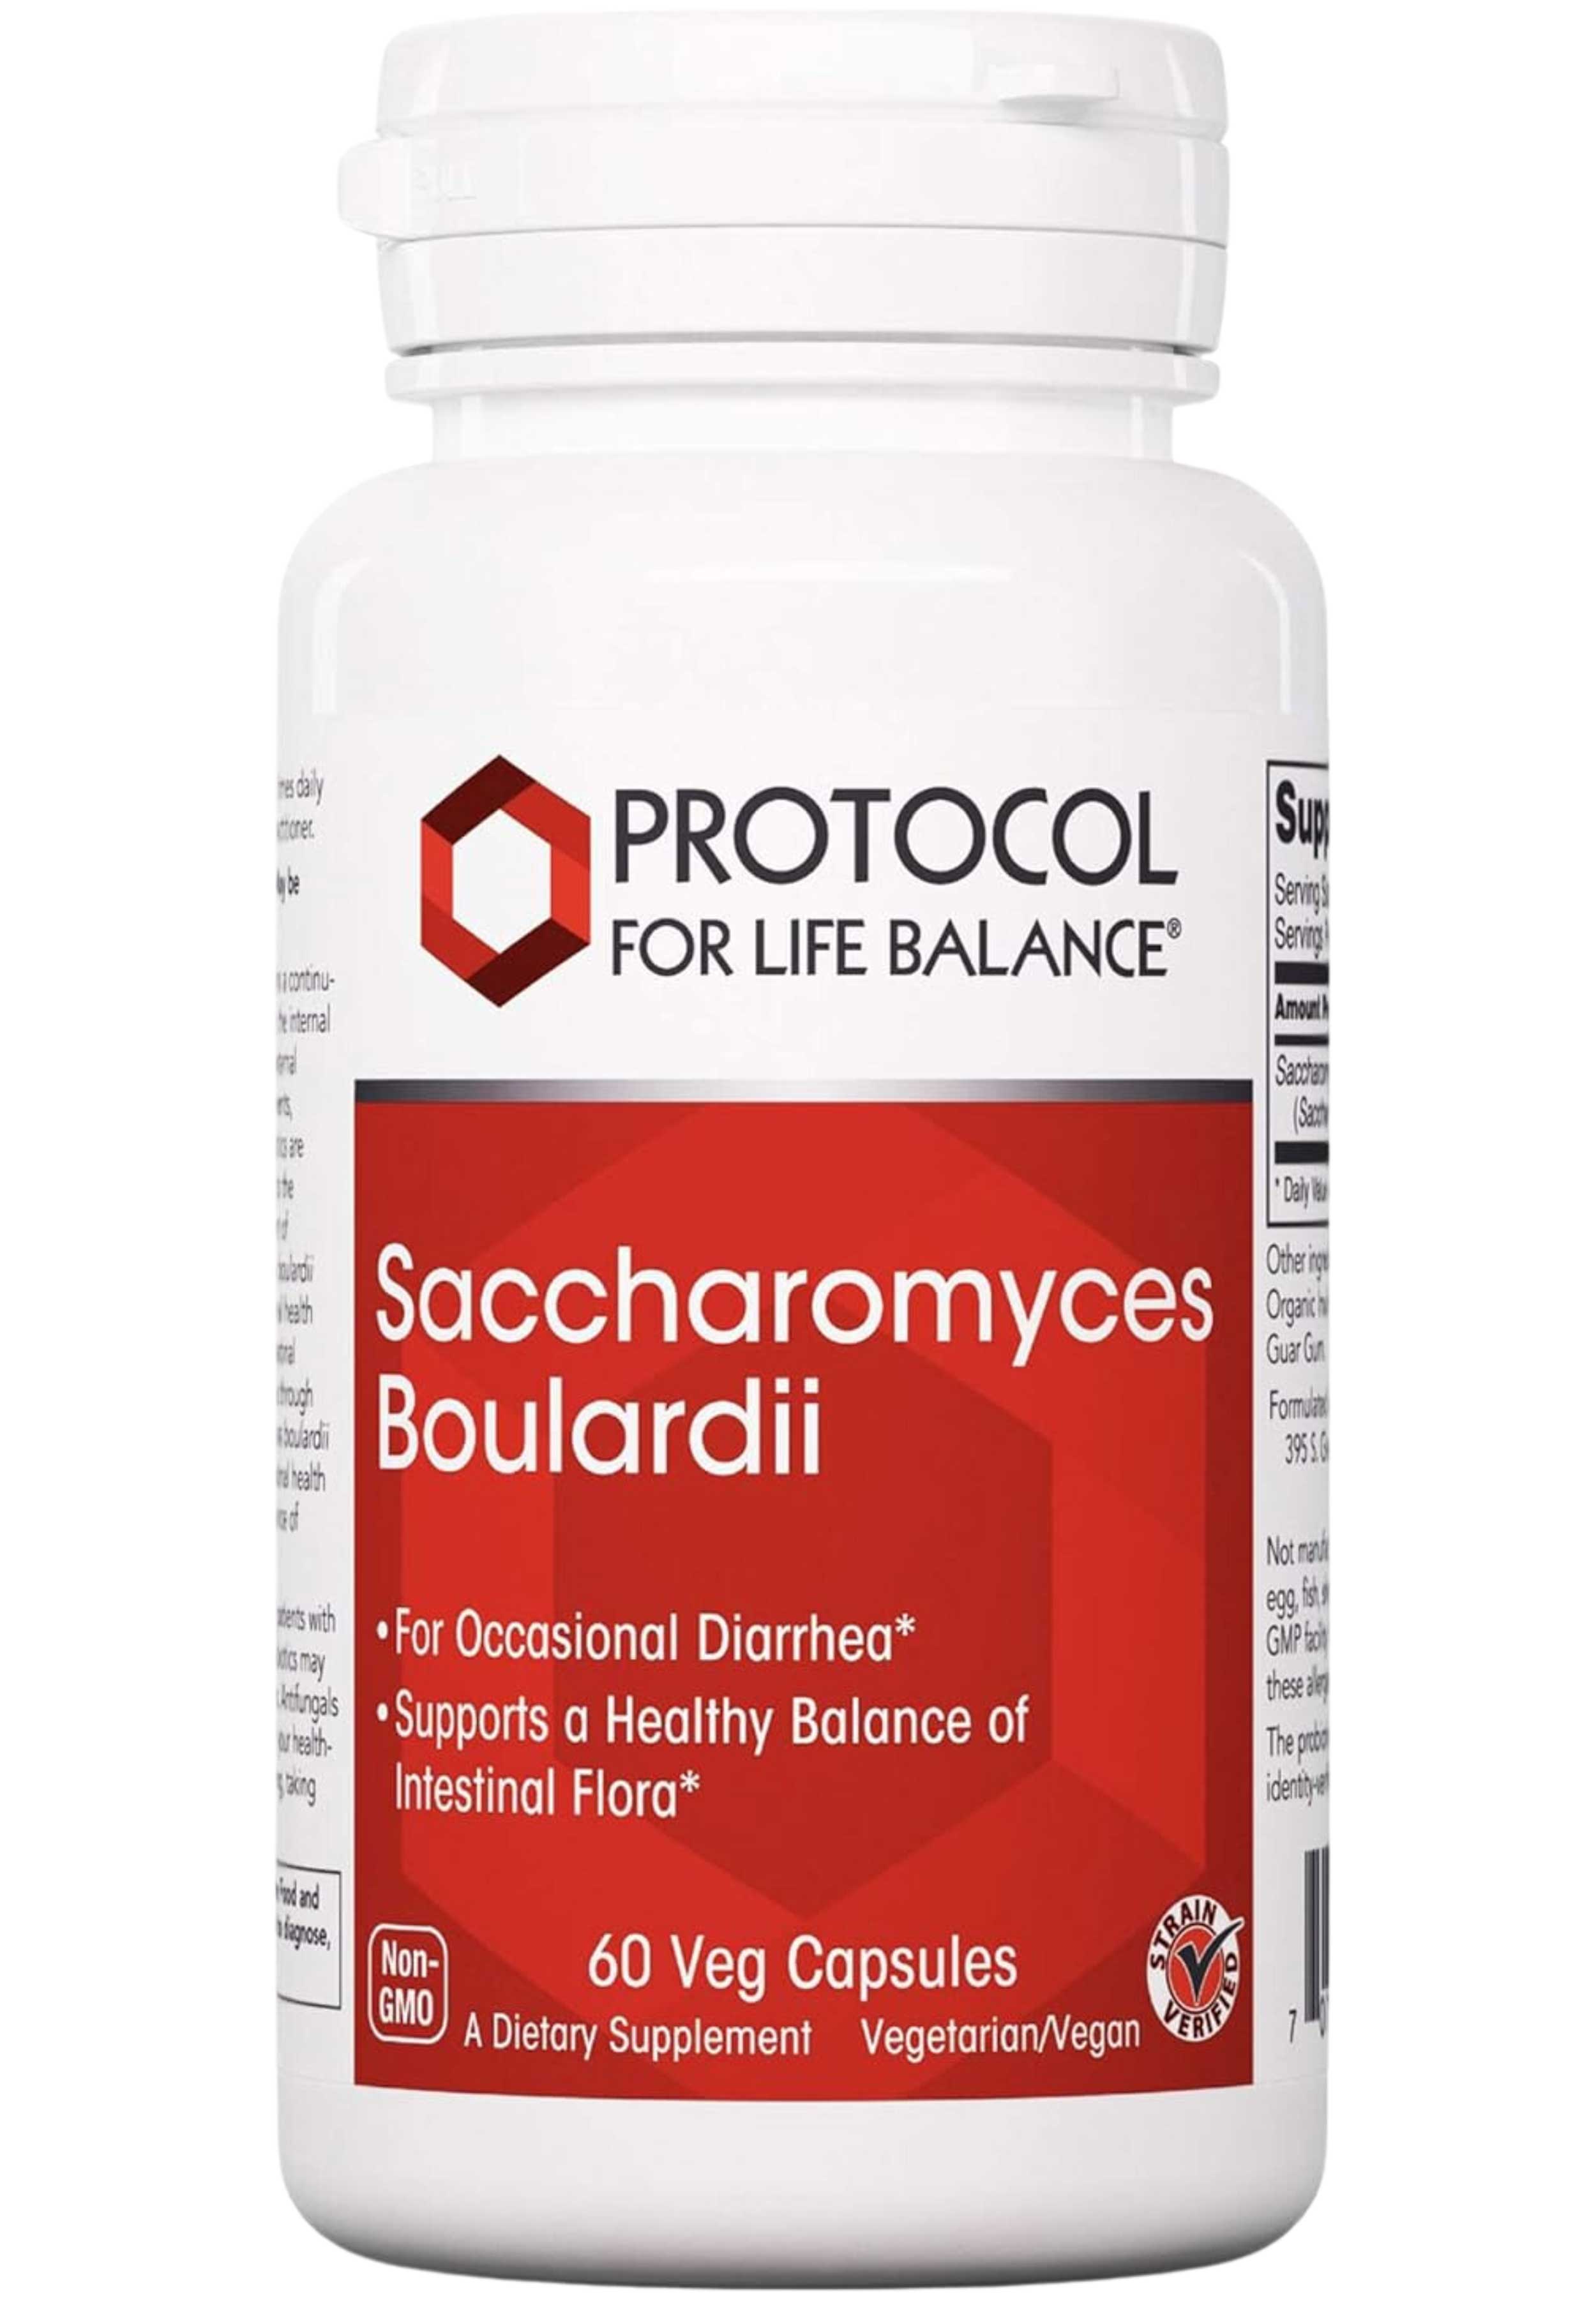 Protocol for Life Balance Saccharomyces Boulardii